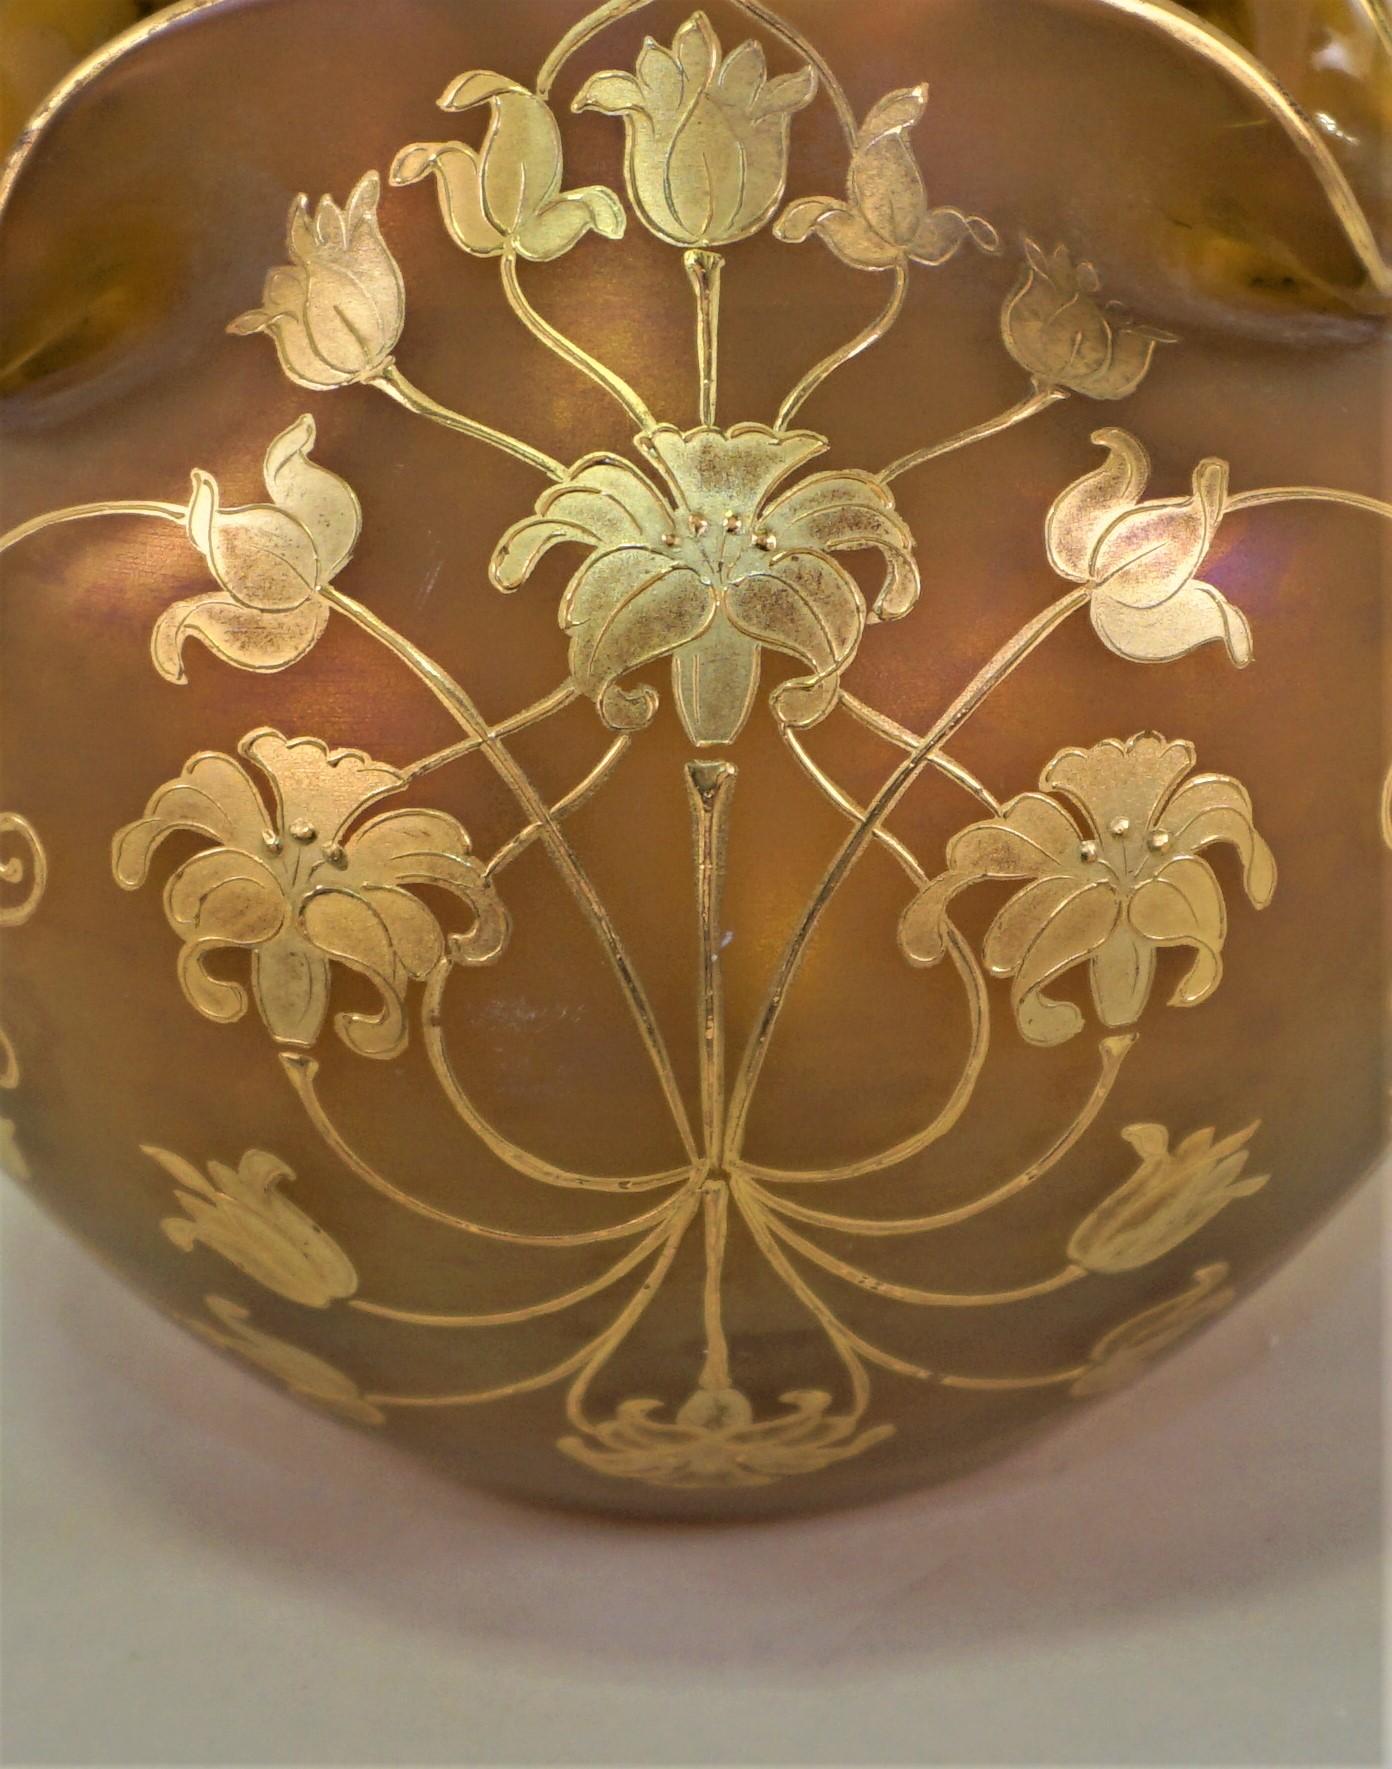 Gold paint over art glass Art Nouveau vase.
circa 1900-1910.